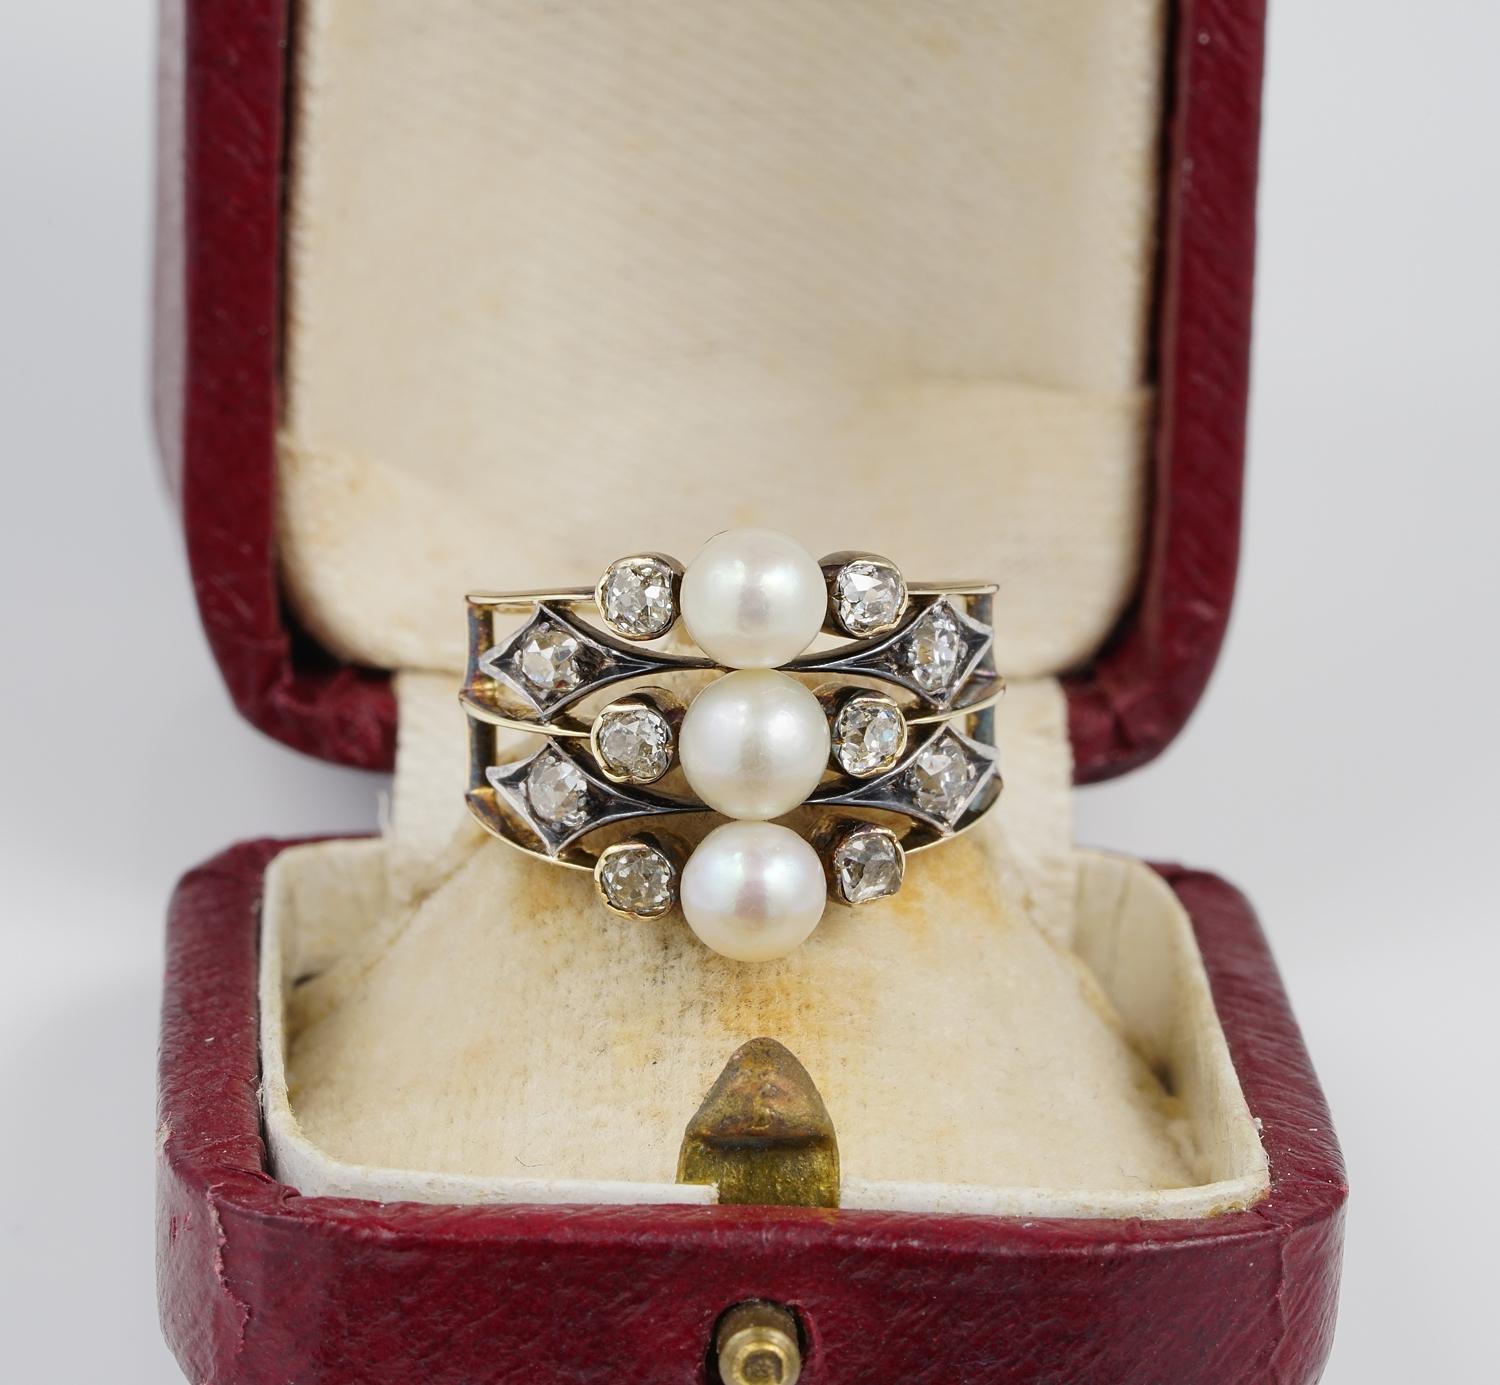 Un exemple victorien unique, 1870 ca
Très belle, façonnée à partir de trois rares perles de mer salées naturelles non nucléées, le trio a inspiré l'ensemble du design unique.
1,0 carat de diamants taillés à l'ancienne s'ajoutent à la brillance